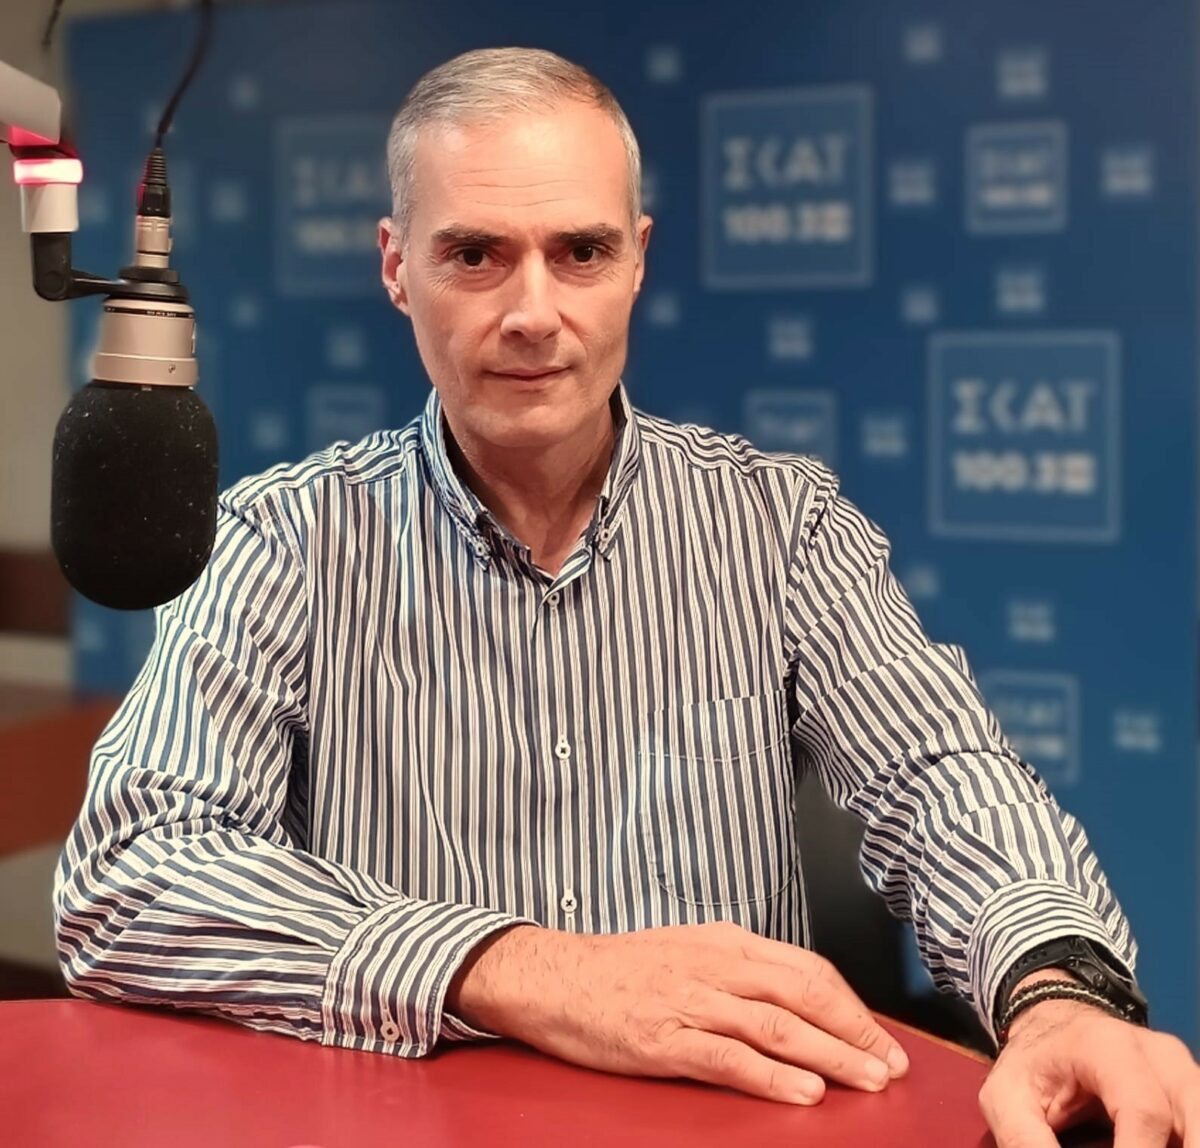 ΣΚΑΙ : Ο δημοσιογράφος Σπύρος Μάλλης αναλαμβάνει καθήκοντα διευθυντή στον ραδιοφωνικό σταθμό ΣΚΑΪ 100,3